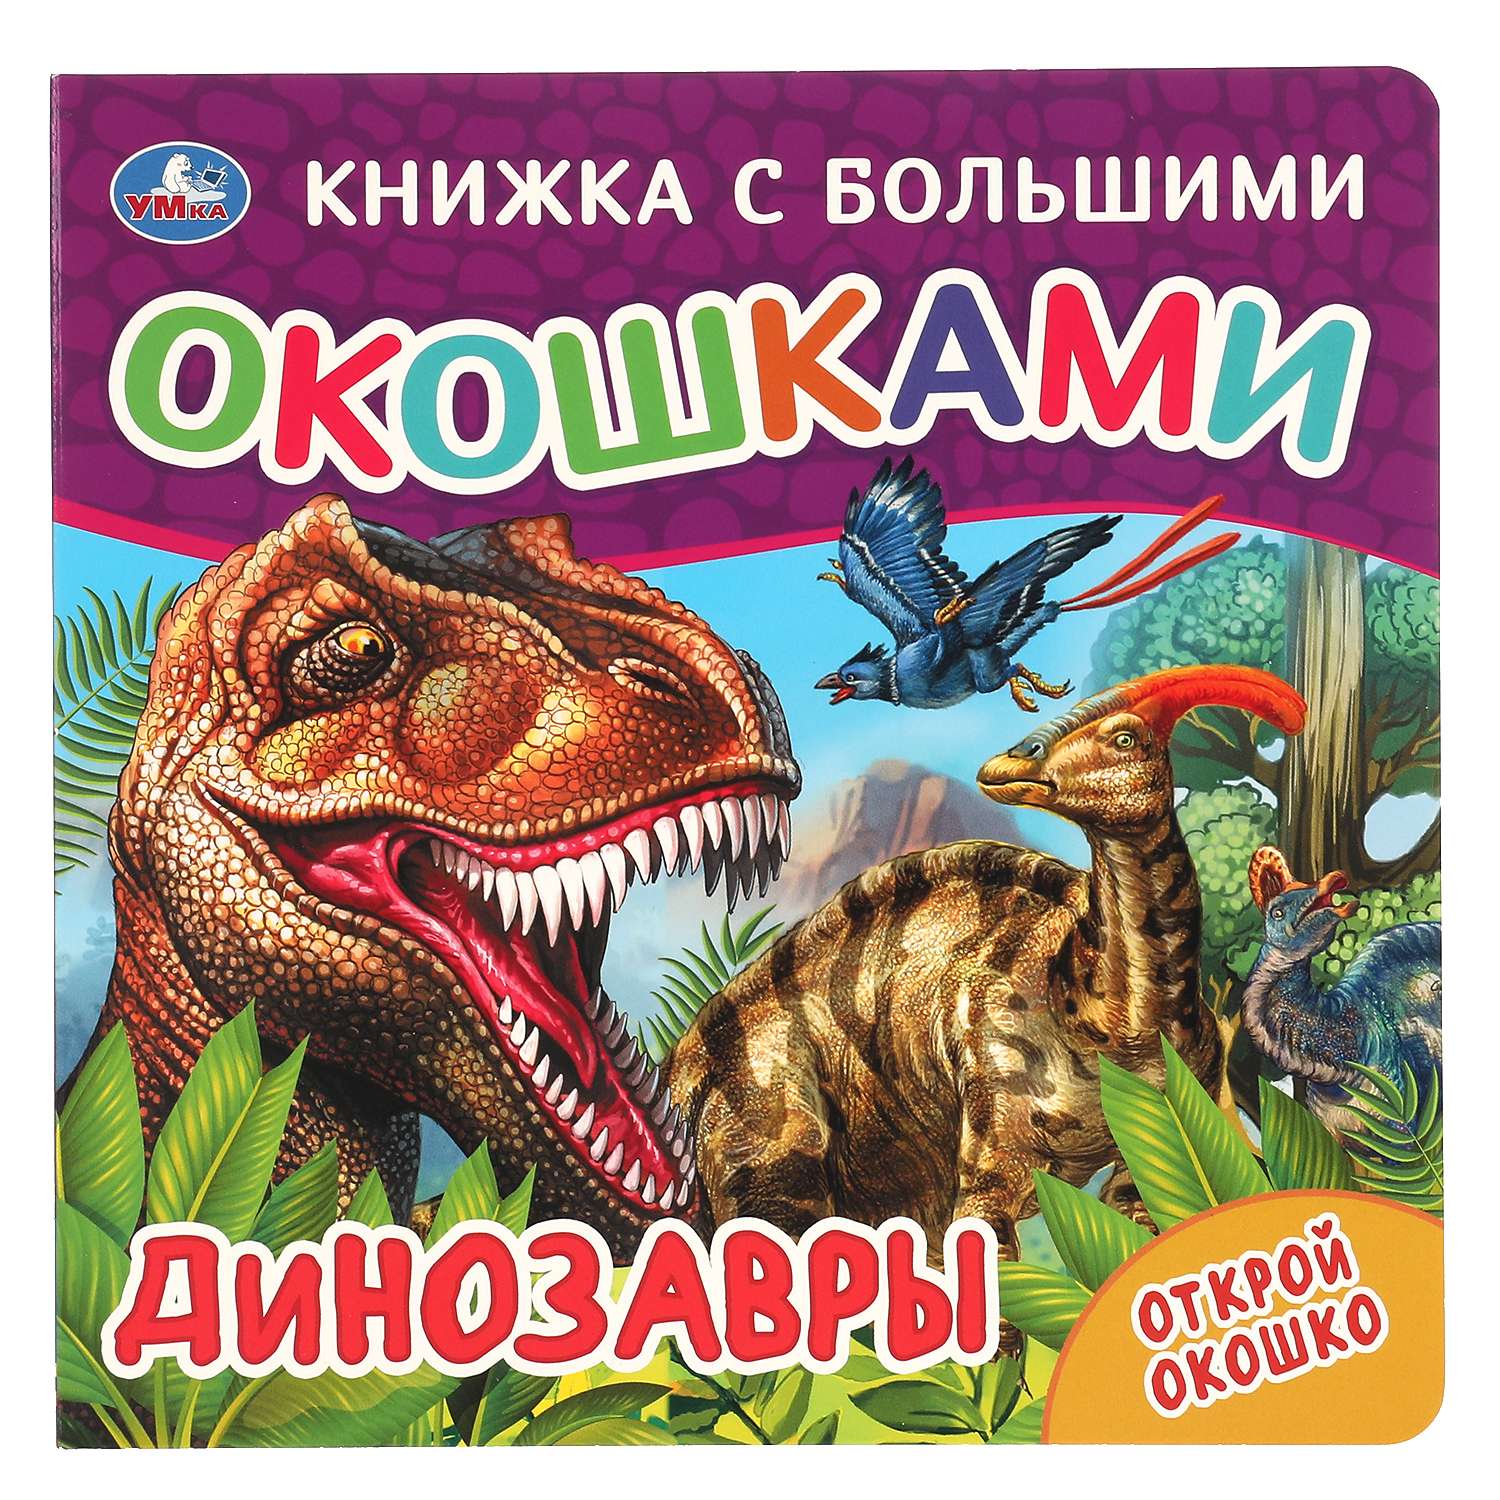 Книга Книжка с большими окошками Динозавры - фото 1